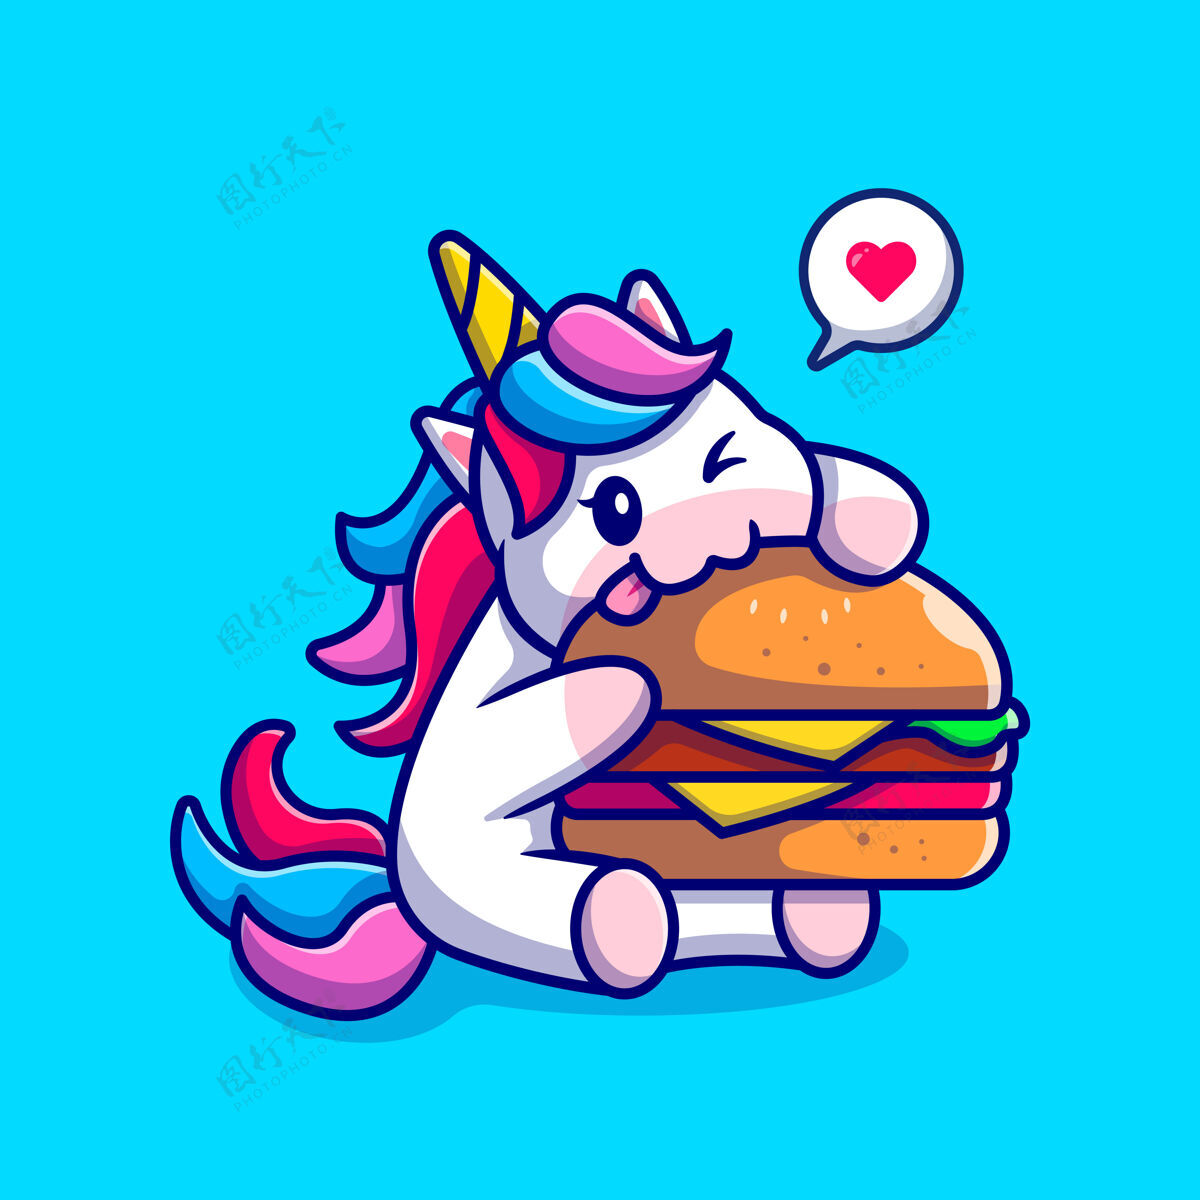 卡通可爱的独角兽吃汉堡包卡通人物动物隔离食品快餐吉祥物可爱